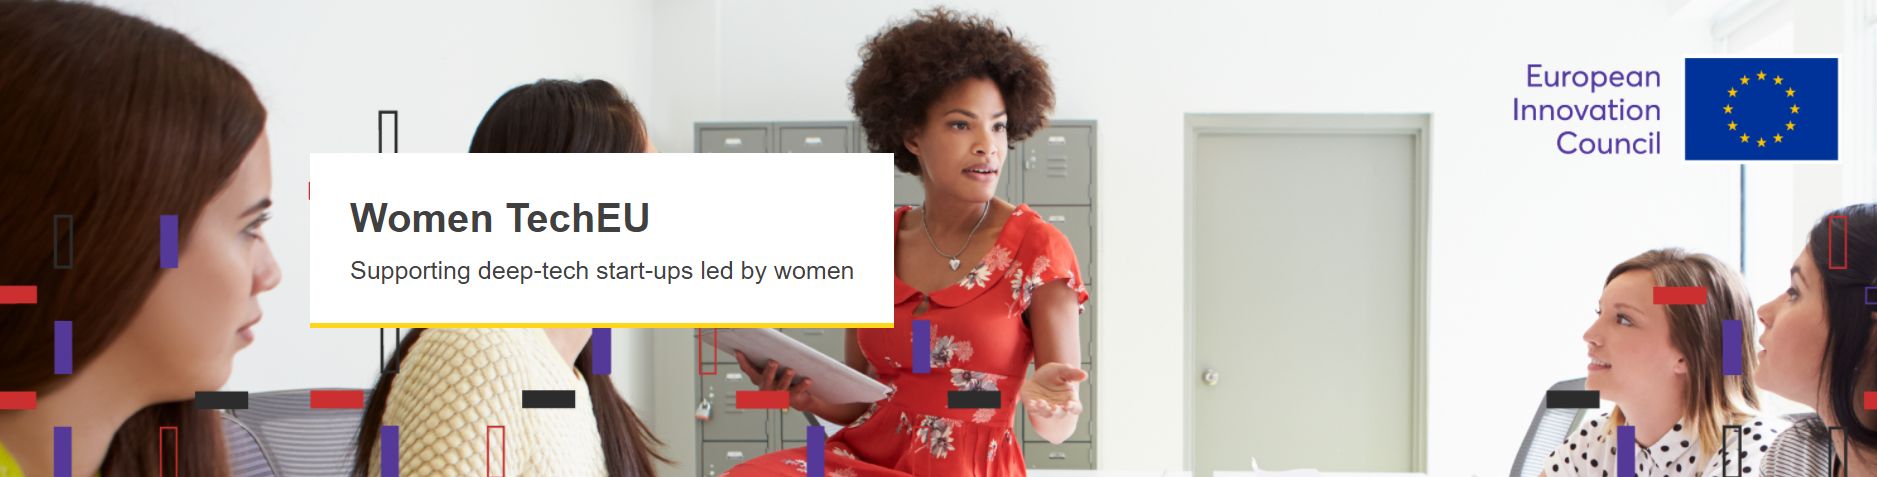 Women TechEU pilot: Η ΕΕ θέτει τις γυναίκες στην πρώτη γραμμή της Deep Tech